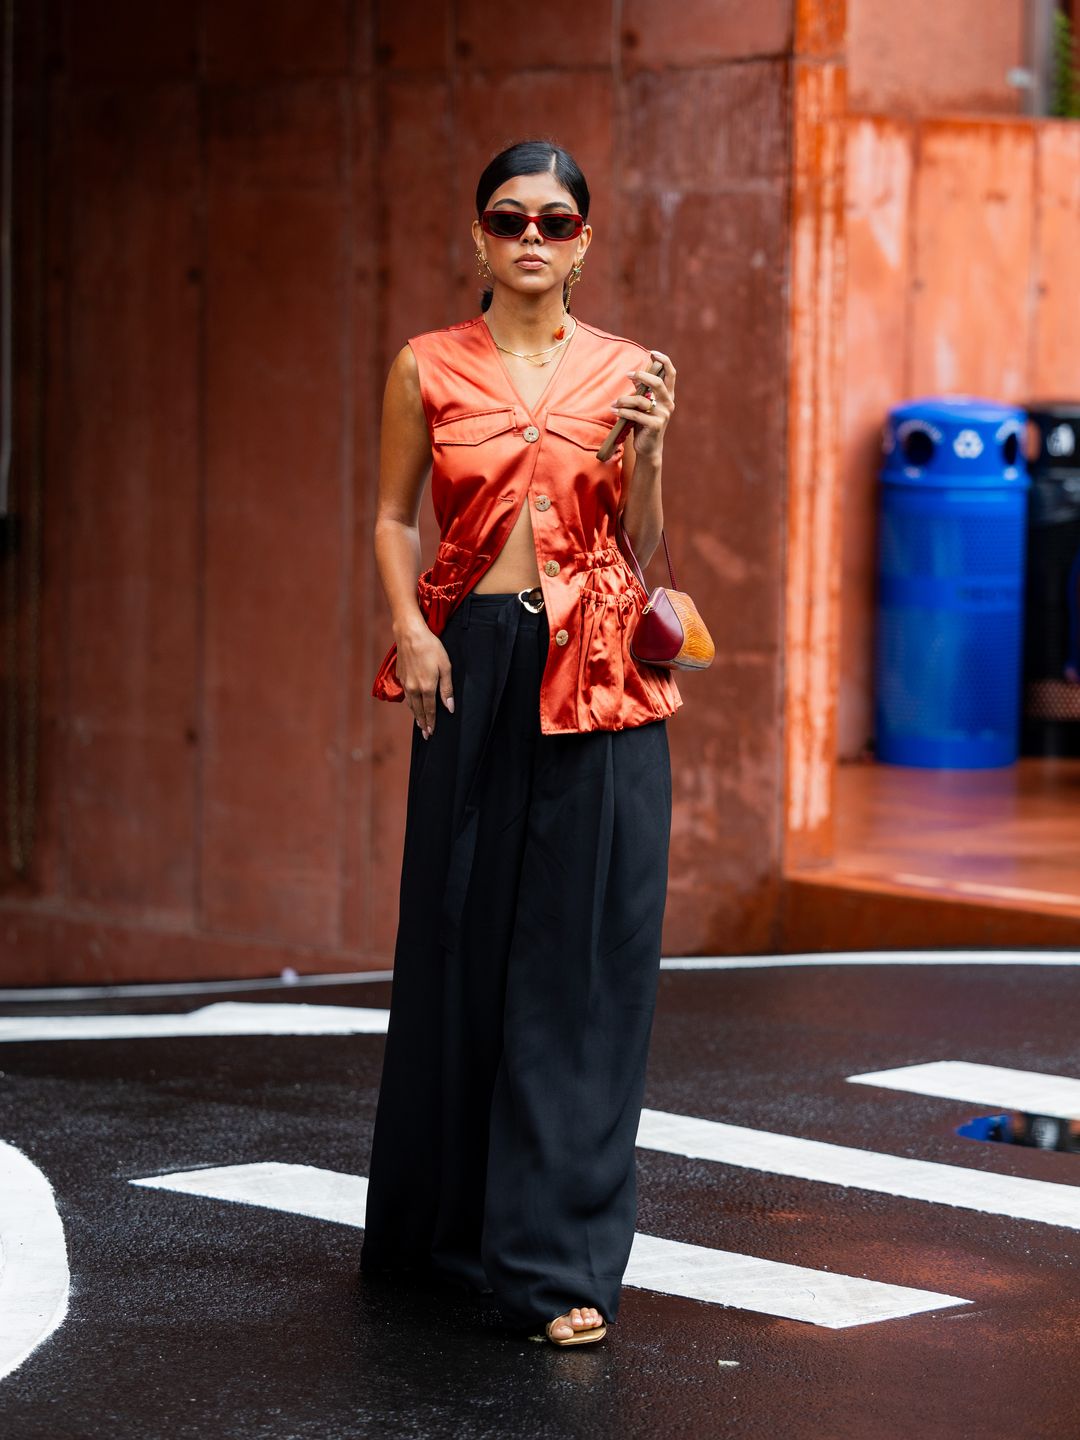 A New York Fashion Week guest styles an orange waistcoat alongside fluid, dark trousers